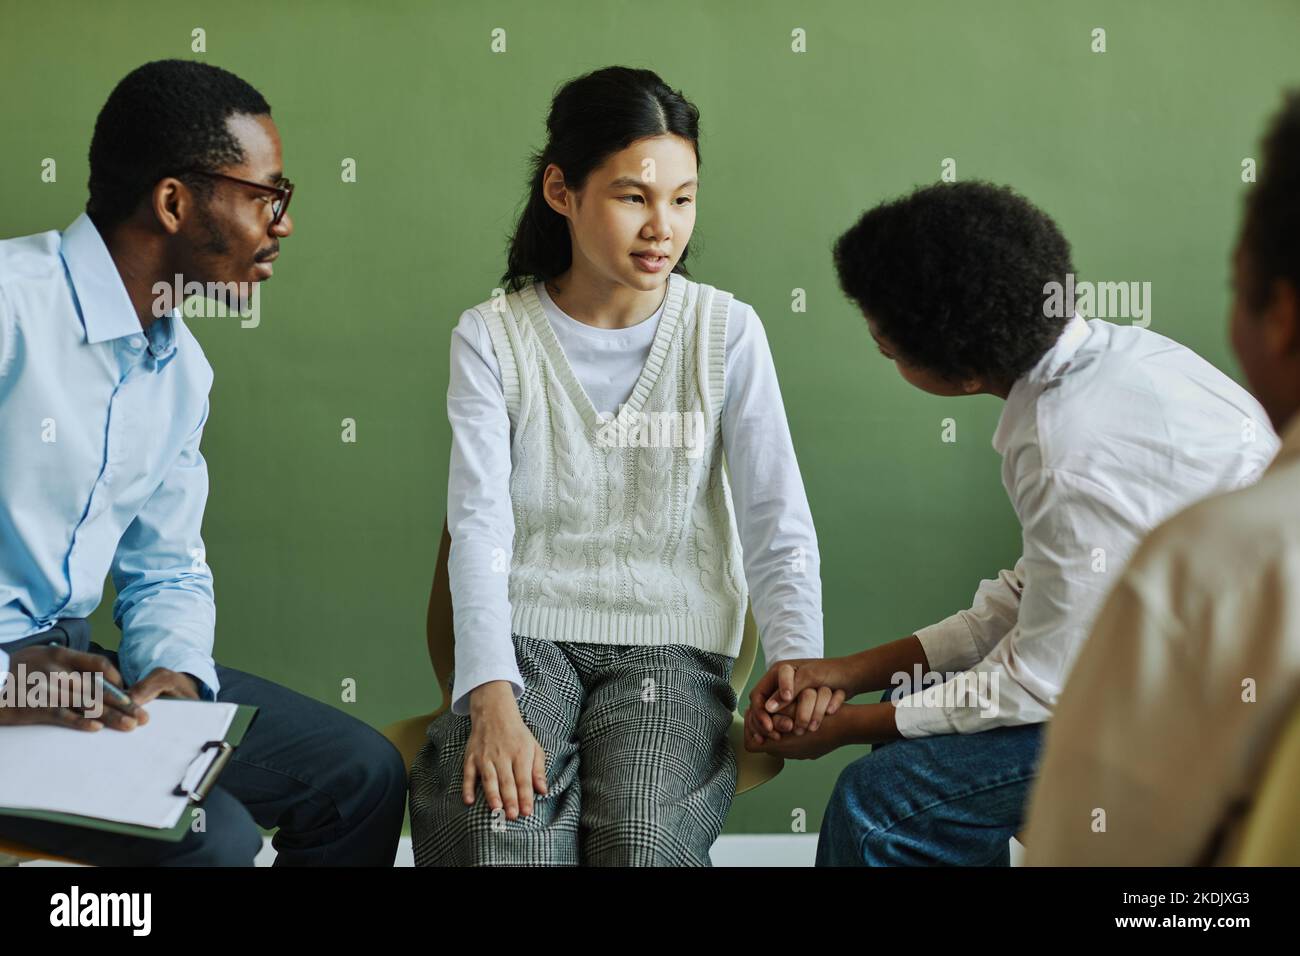 Jugendliches Schulmädchen im Gespräch mit dem Schuljungen, der ihre Hände während der Diskussion über ihre Probleme in einer psychologischen Sitzung hält Stockfoto